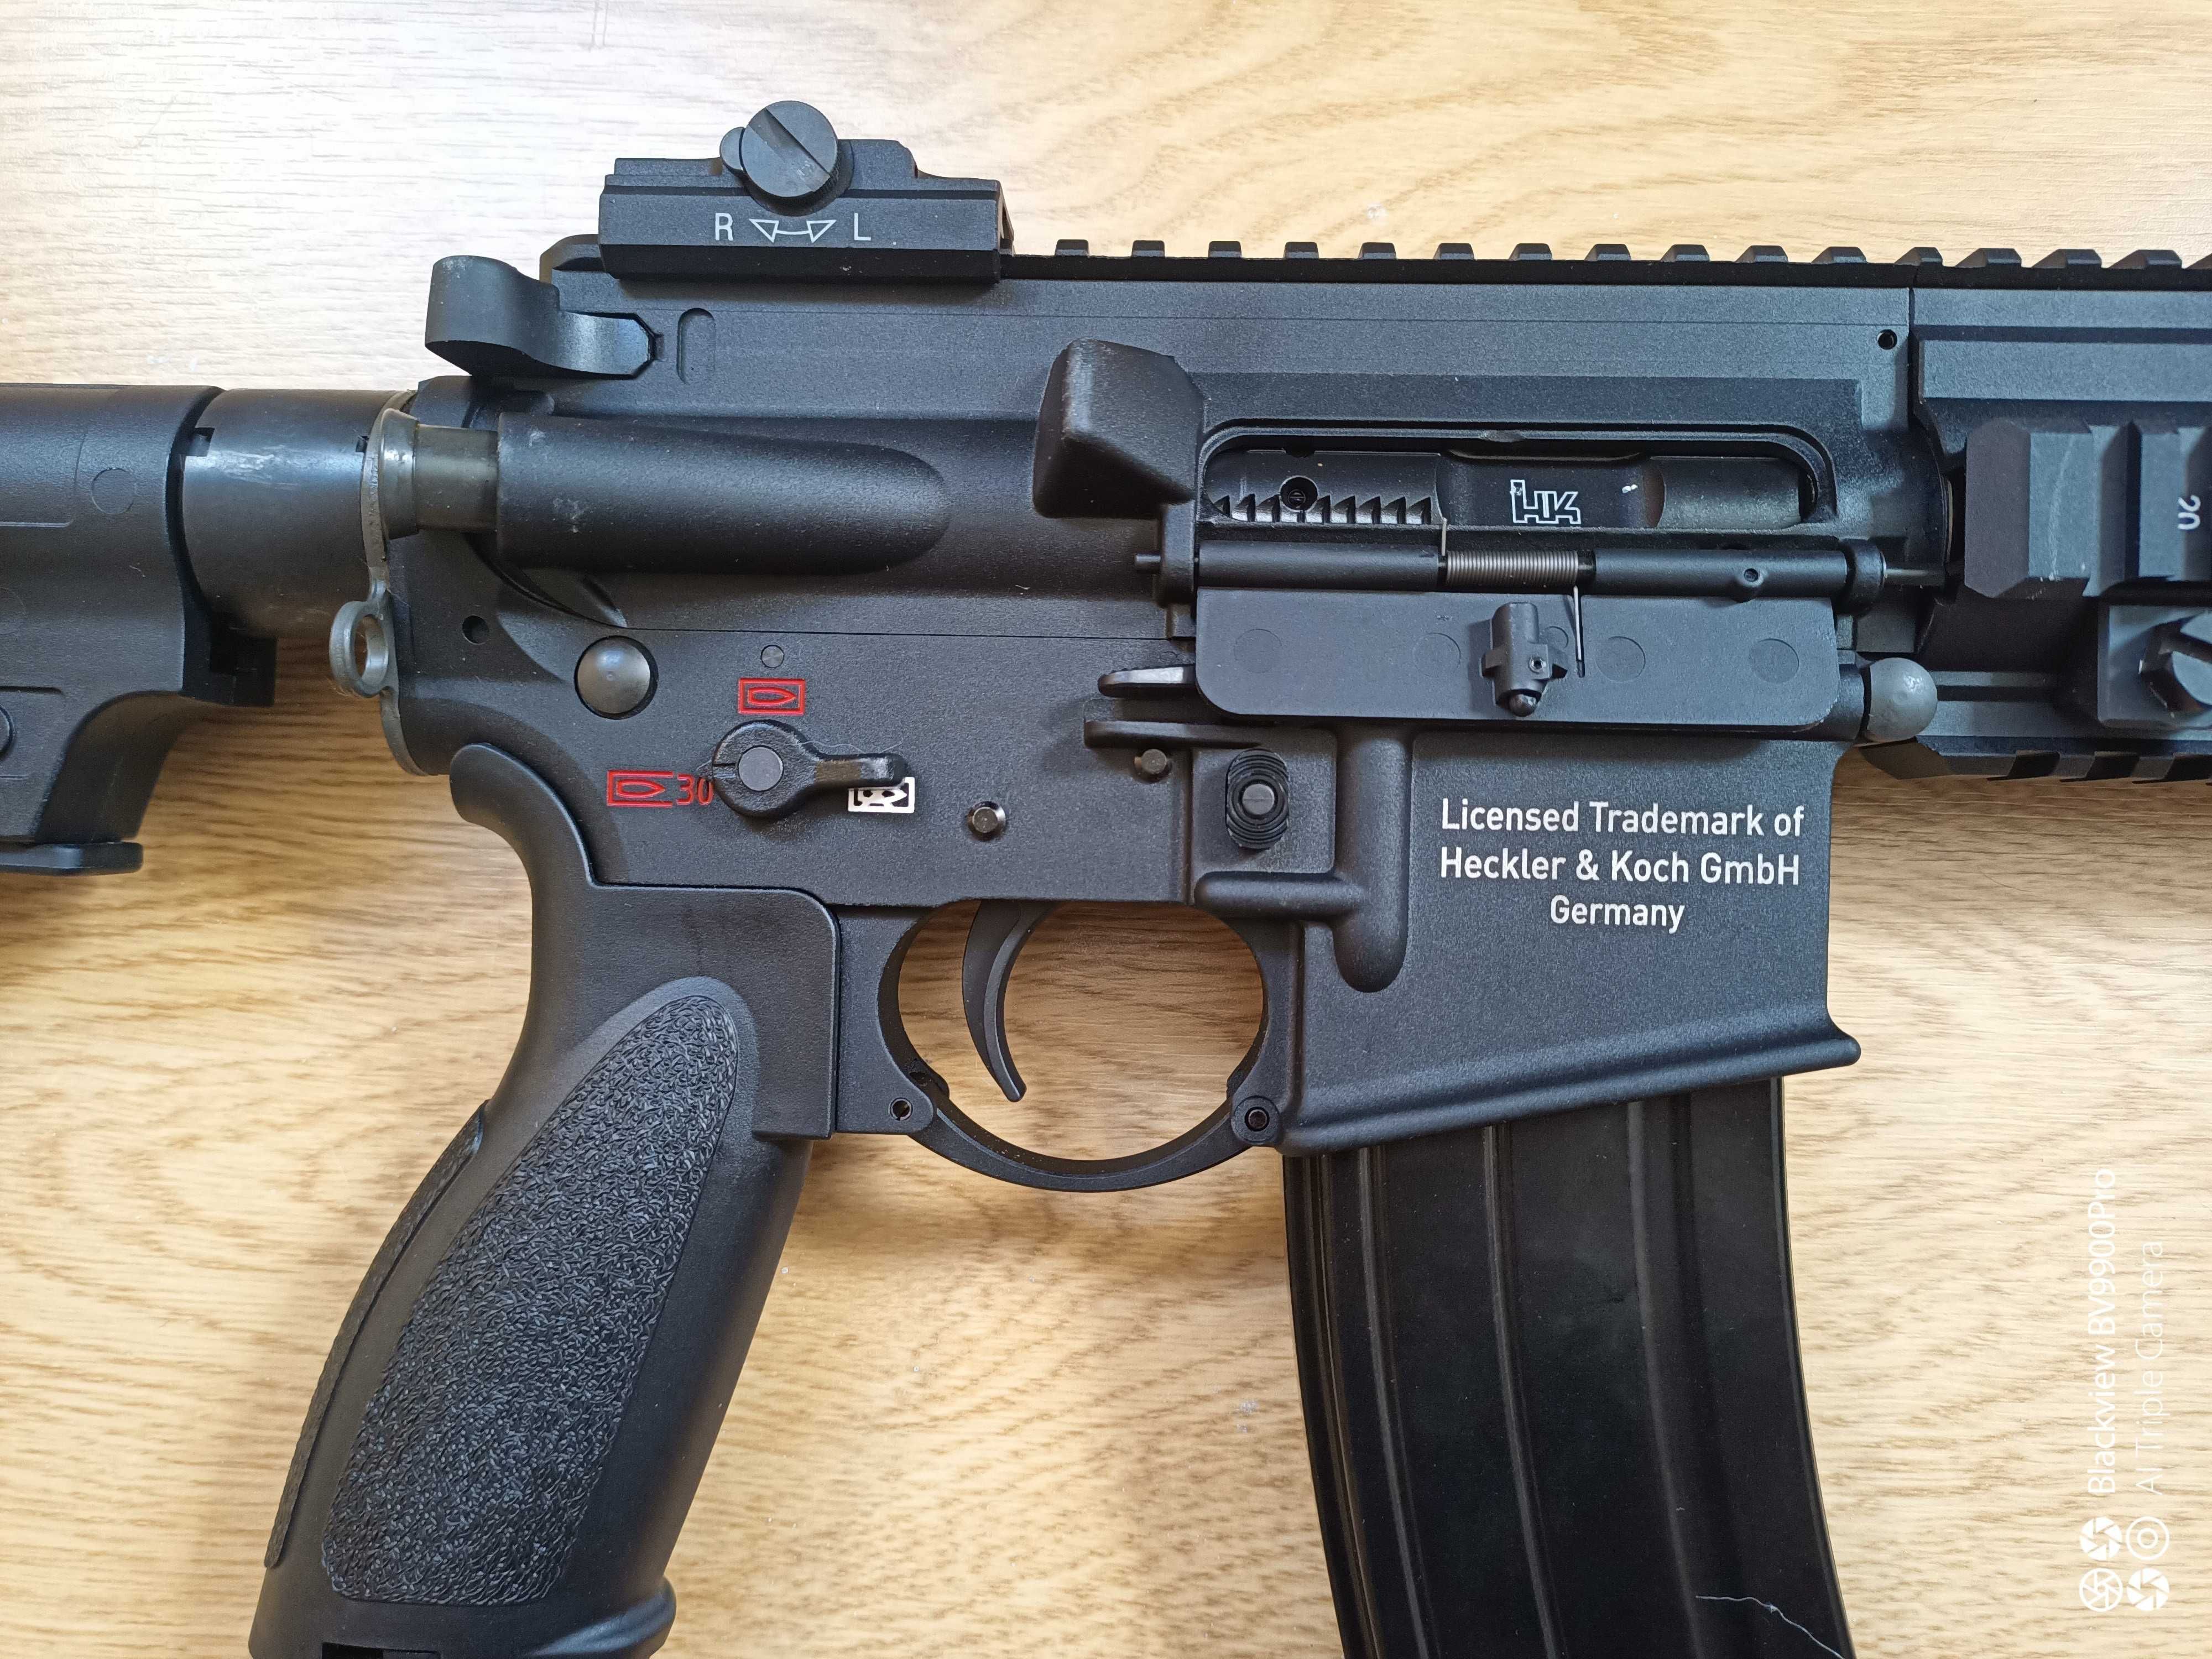 HK416a5 gbbr da umarex/vfc